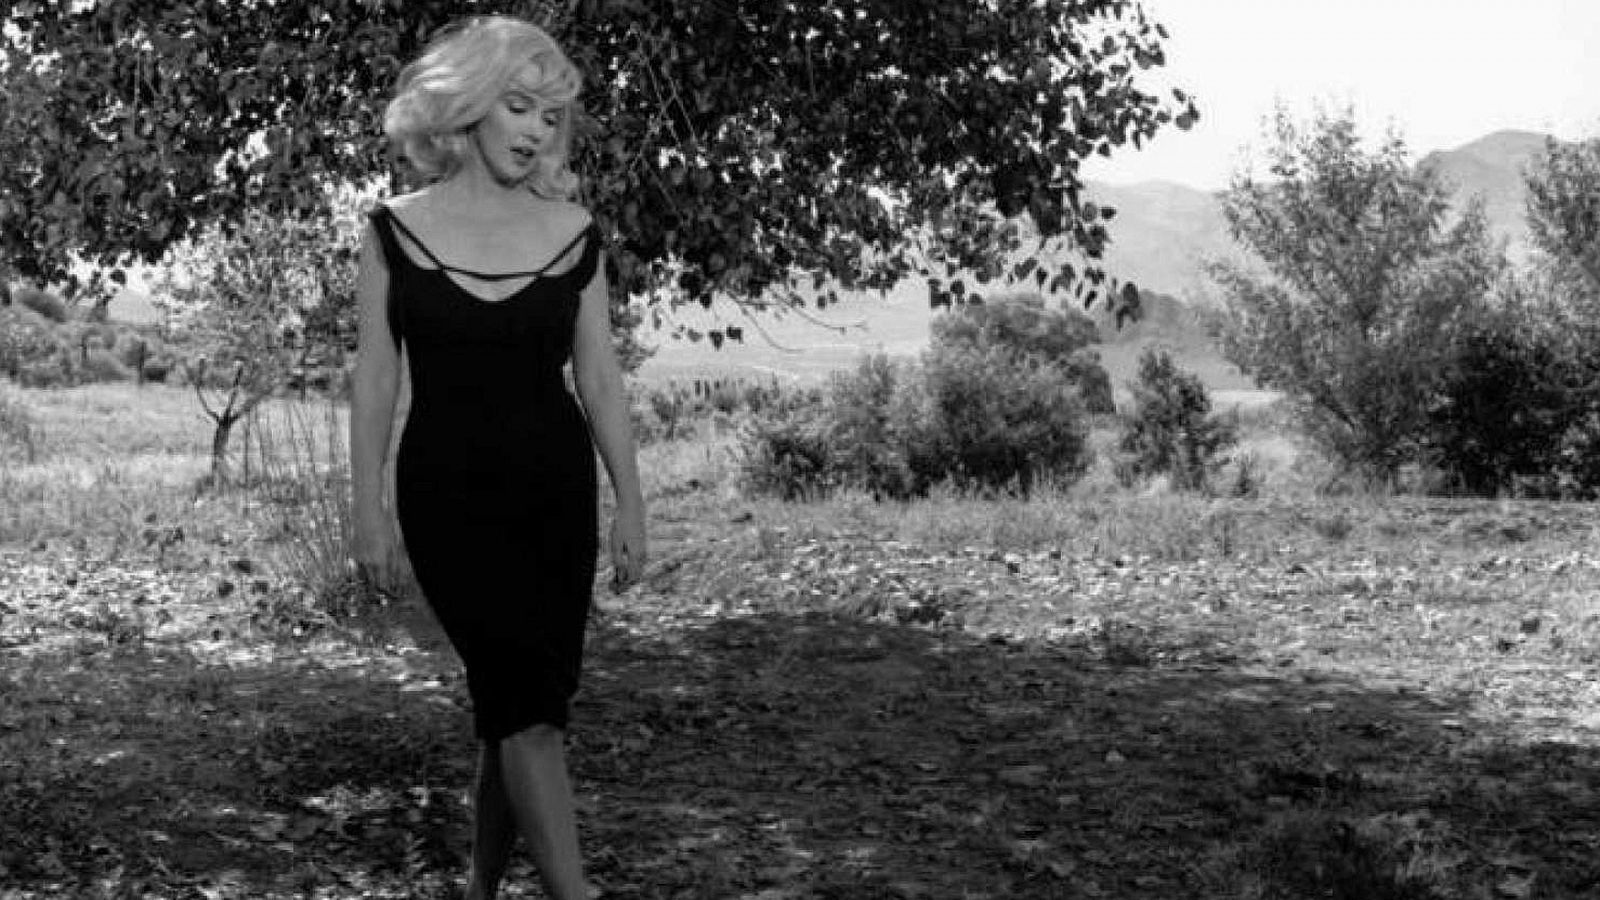 Cine | La secuencia nunca vista de Marilyn Monroe